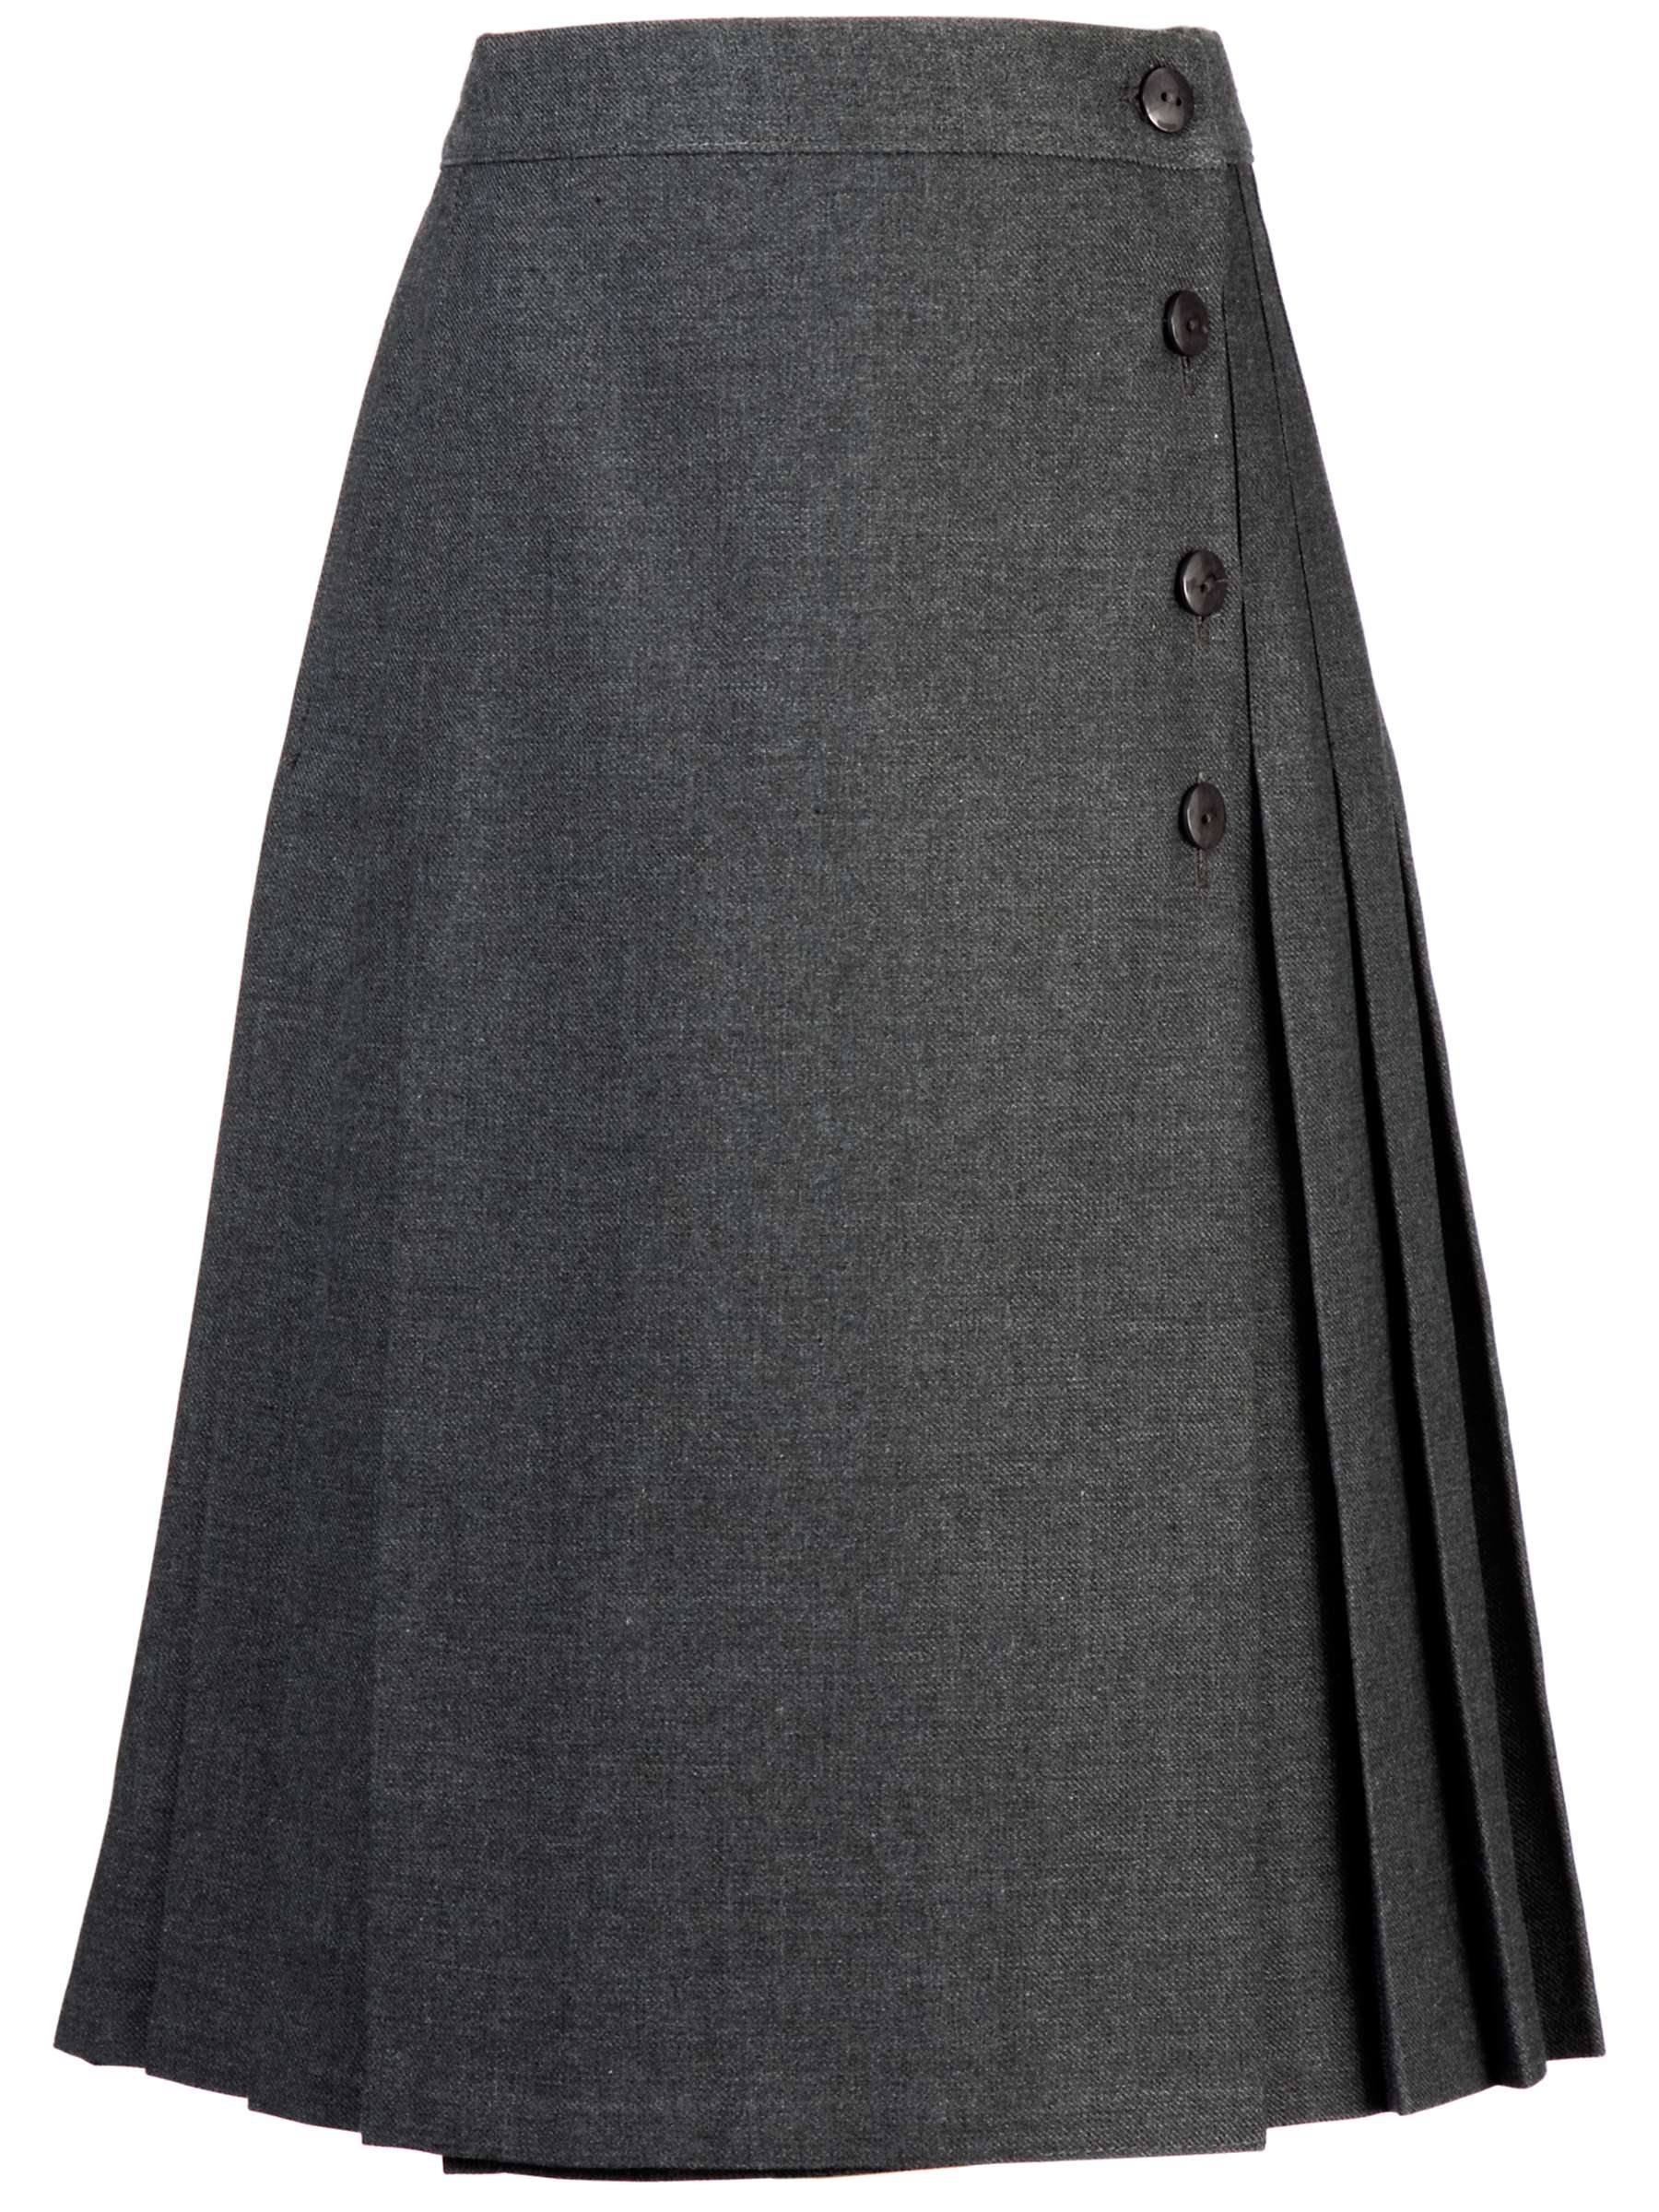 Buy Girls' School Pleated Kilt Skirt, Grey Online at johnlewis.com